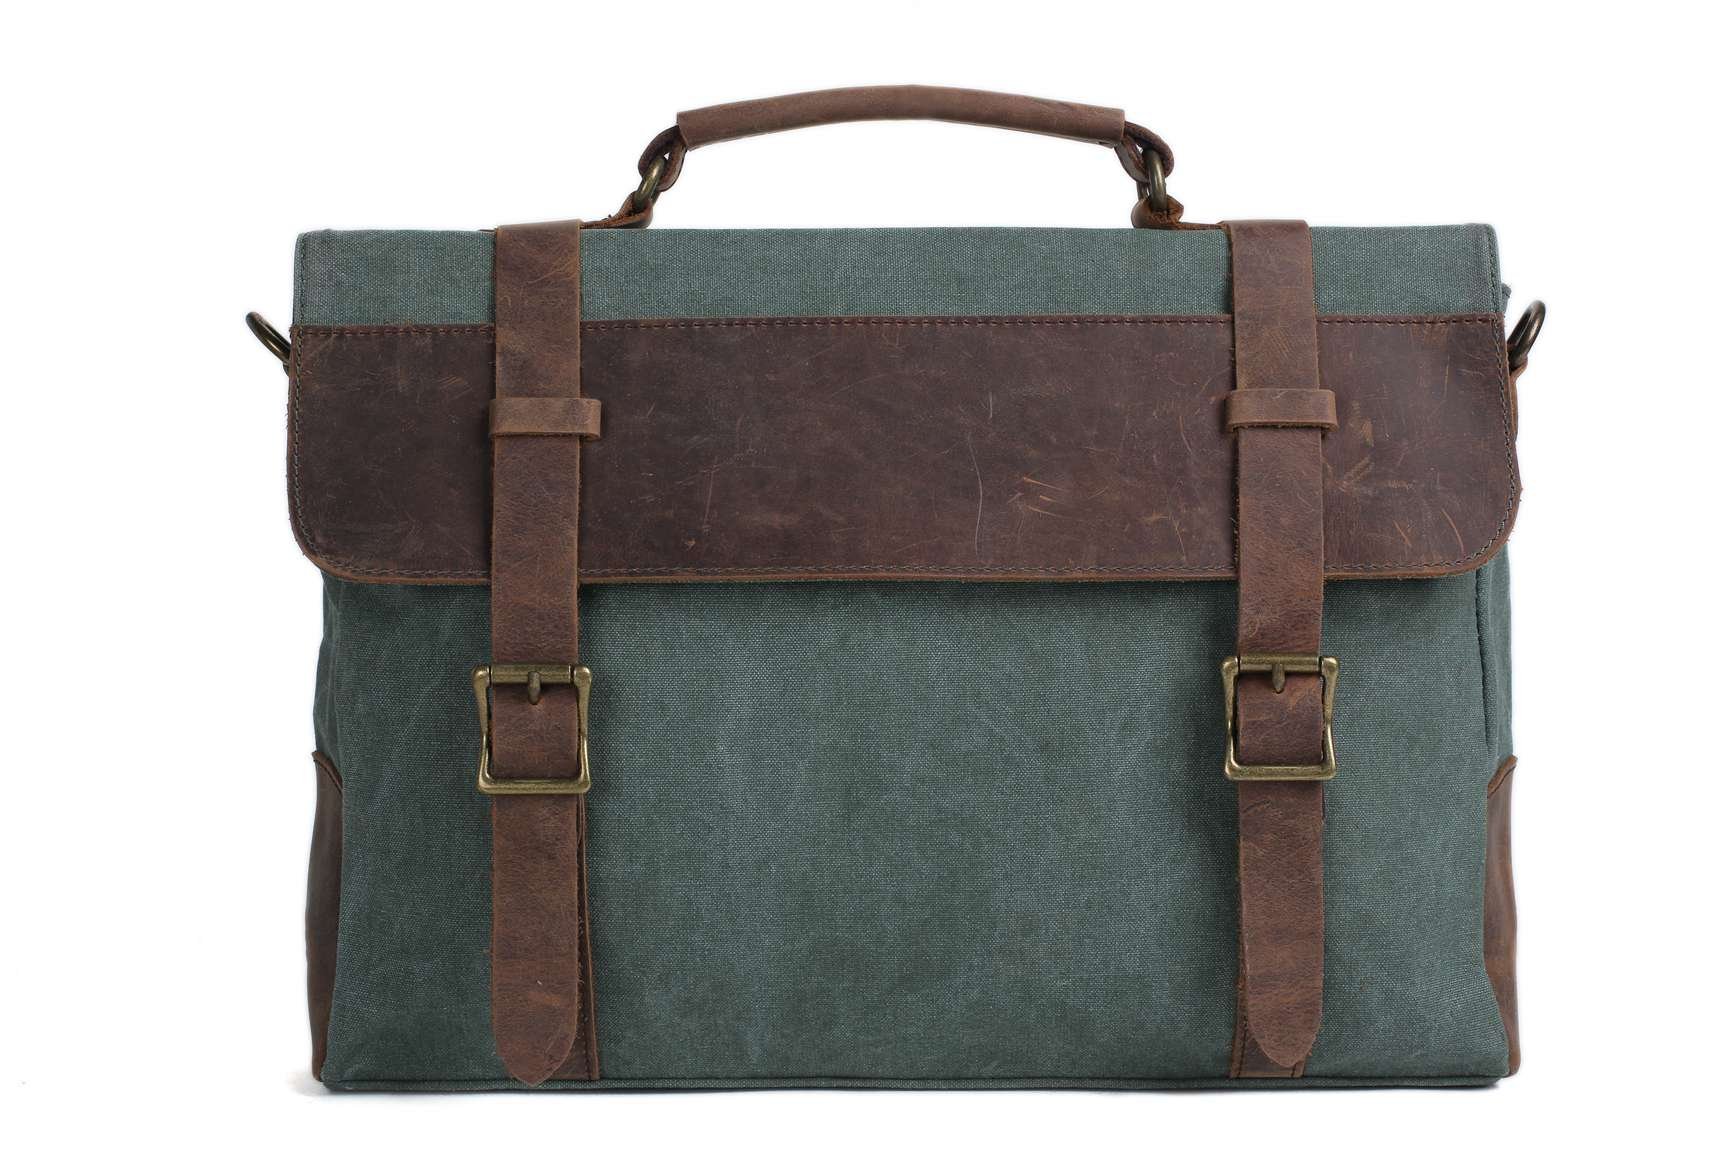 MoshiLeatherBag - Handmade Leather Bag Manufacturer — Canvas Leather Bag Briefcase Messenger Bag ...